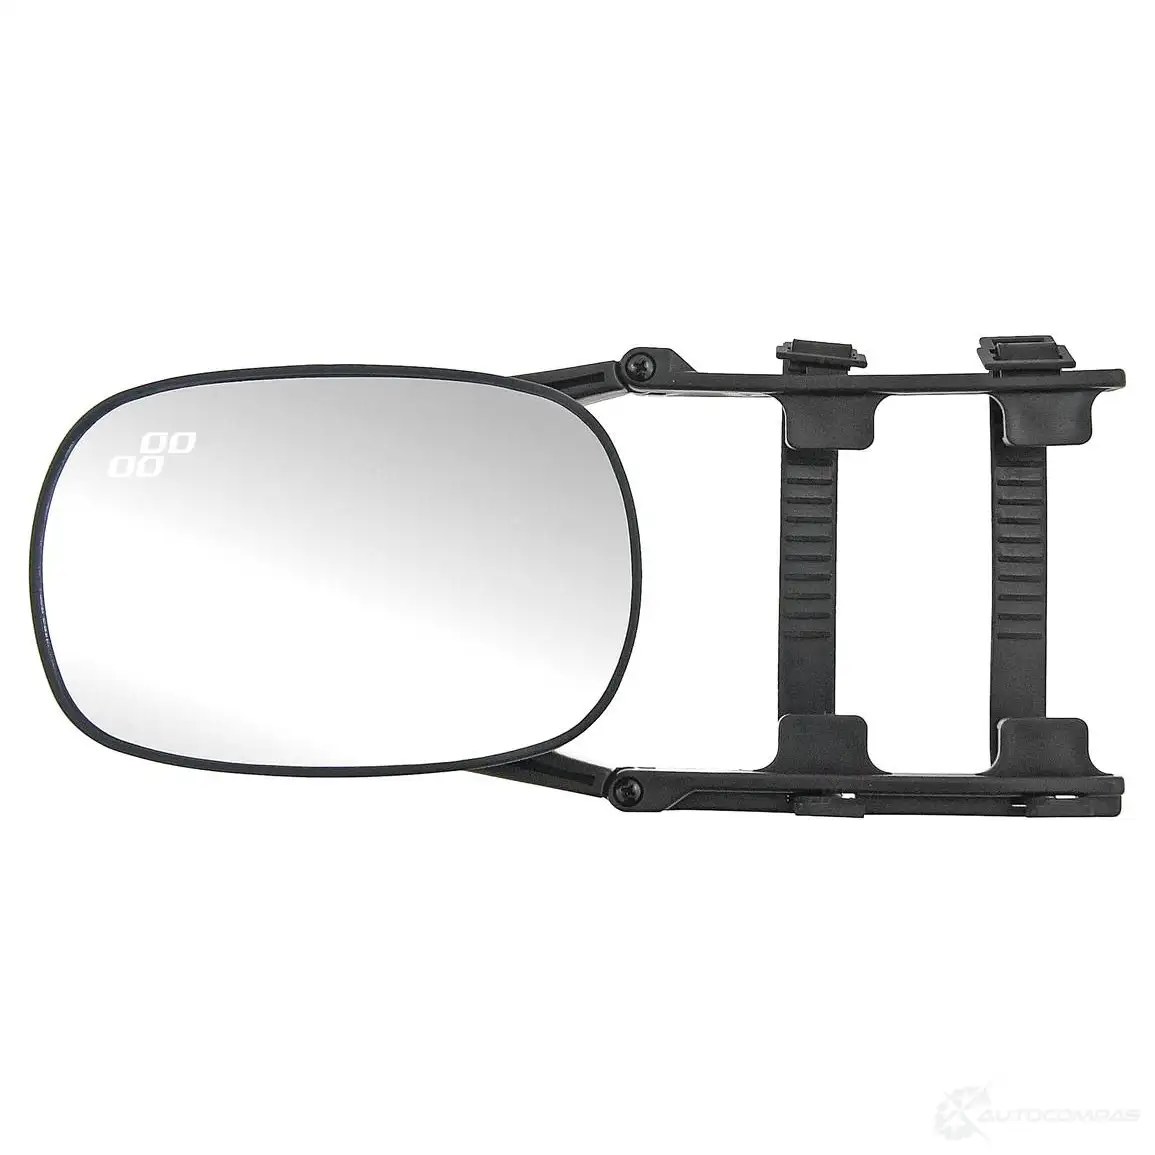 Зеркало дополнительное Караван. Зеркала для прицепа. Доп.зеркала для буксировки прицепа. Расширитель зеркал для прицепа.